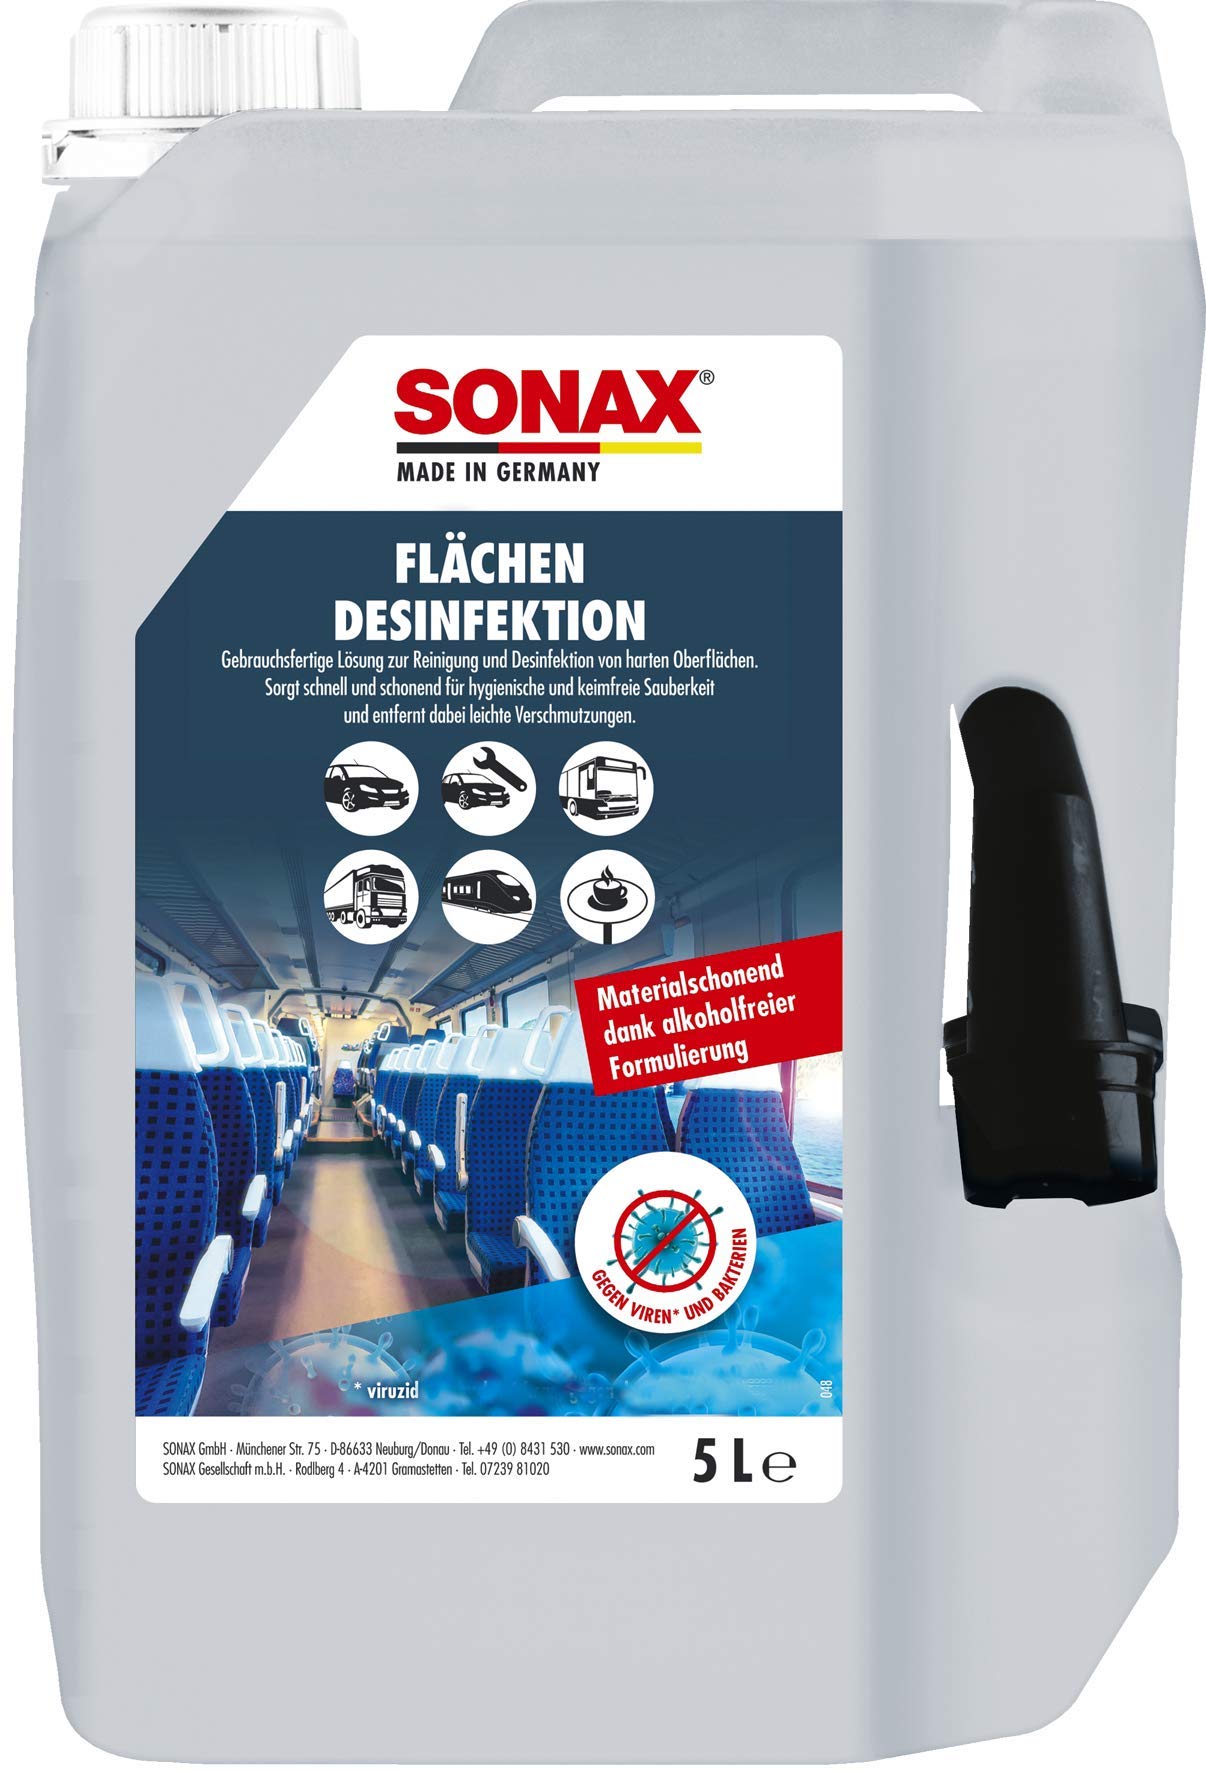 SONAX Flächendesinfektion (5 Liter) zur Reinigung und Desinfektion von allen harten Oberflächen rund ums Auto, materialschonend | Art-Nr. 04035050 von SONAX